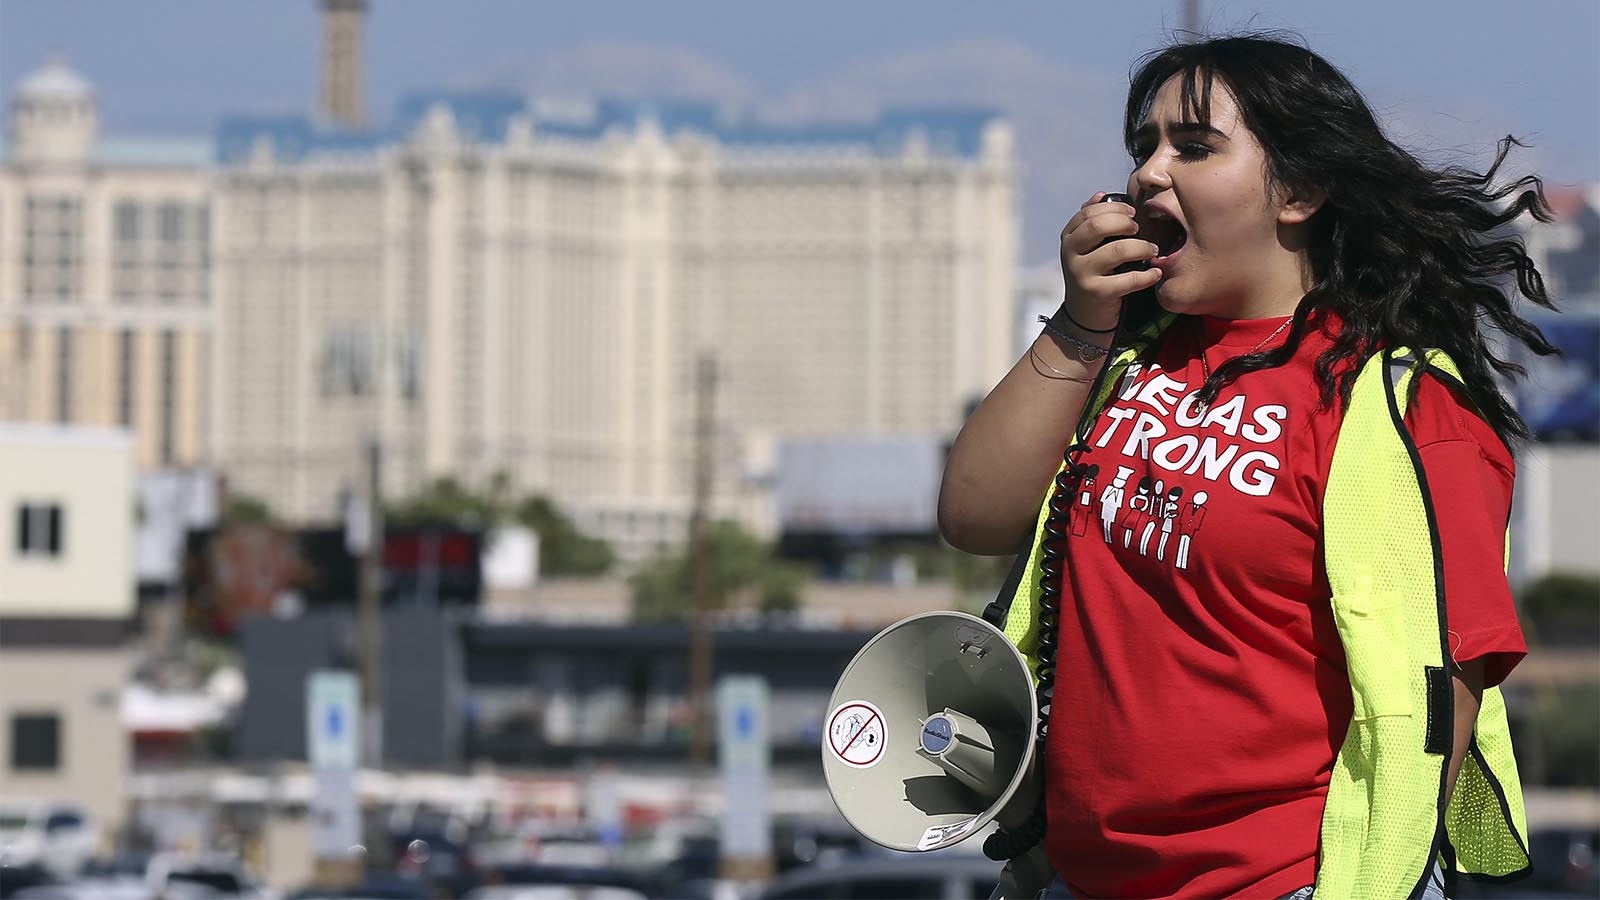 מתנדבת מהאיגוד קוראת לעובדים לבוא ולהצביע בעד השביתה (AP Photo/Isaac Brekken)